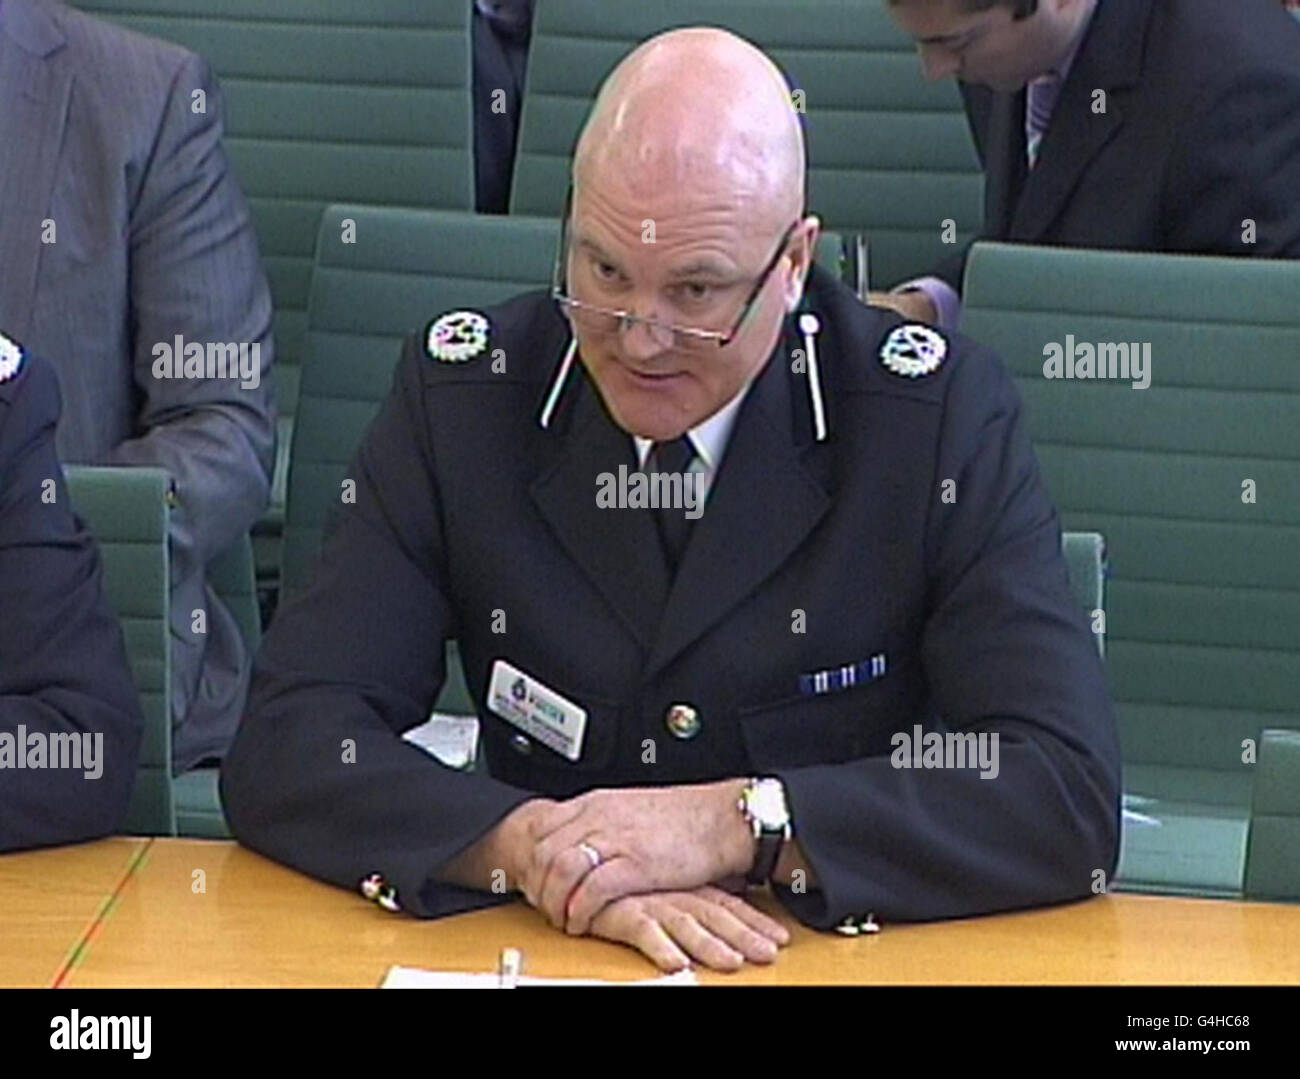 Paul Broadbent, stellvertretender Polizeichef von Nottinghamshire, trat vor dem Ausschuss für Inneres im Unterhaus im Zentrum von London auf, wo er Fragen zur Polizei bezüglich der jüngsten Unruhen beantwortete. Stockfoto